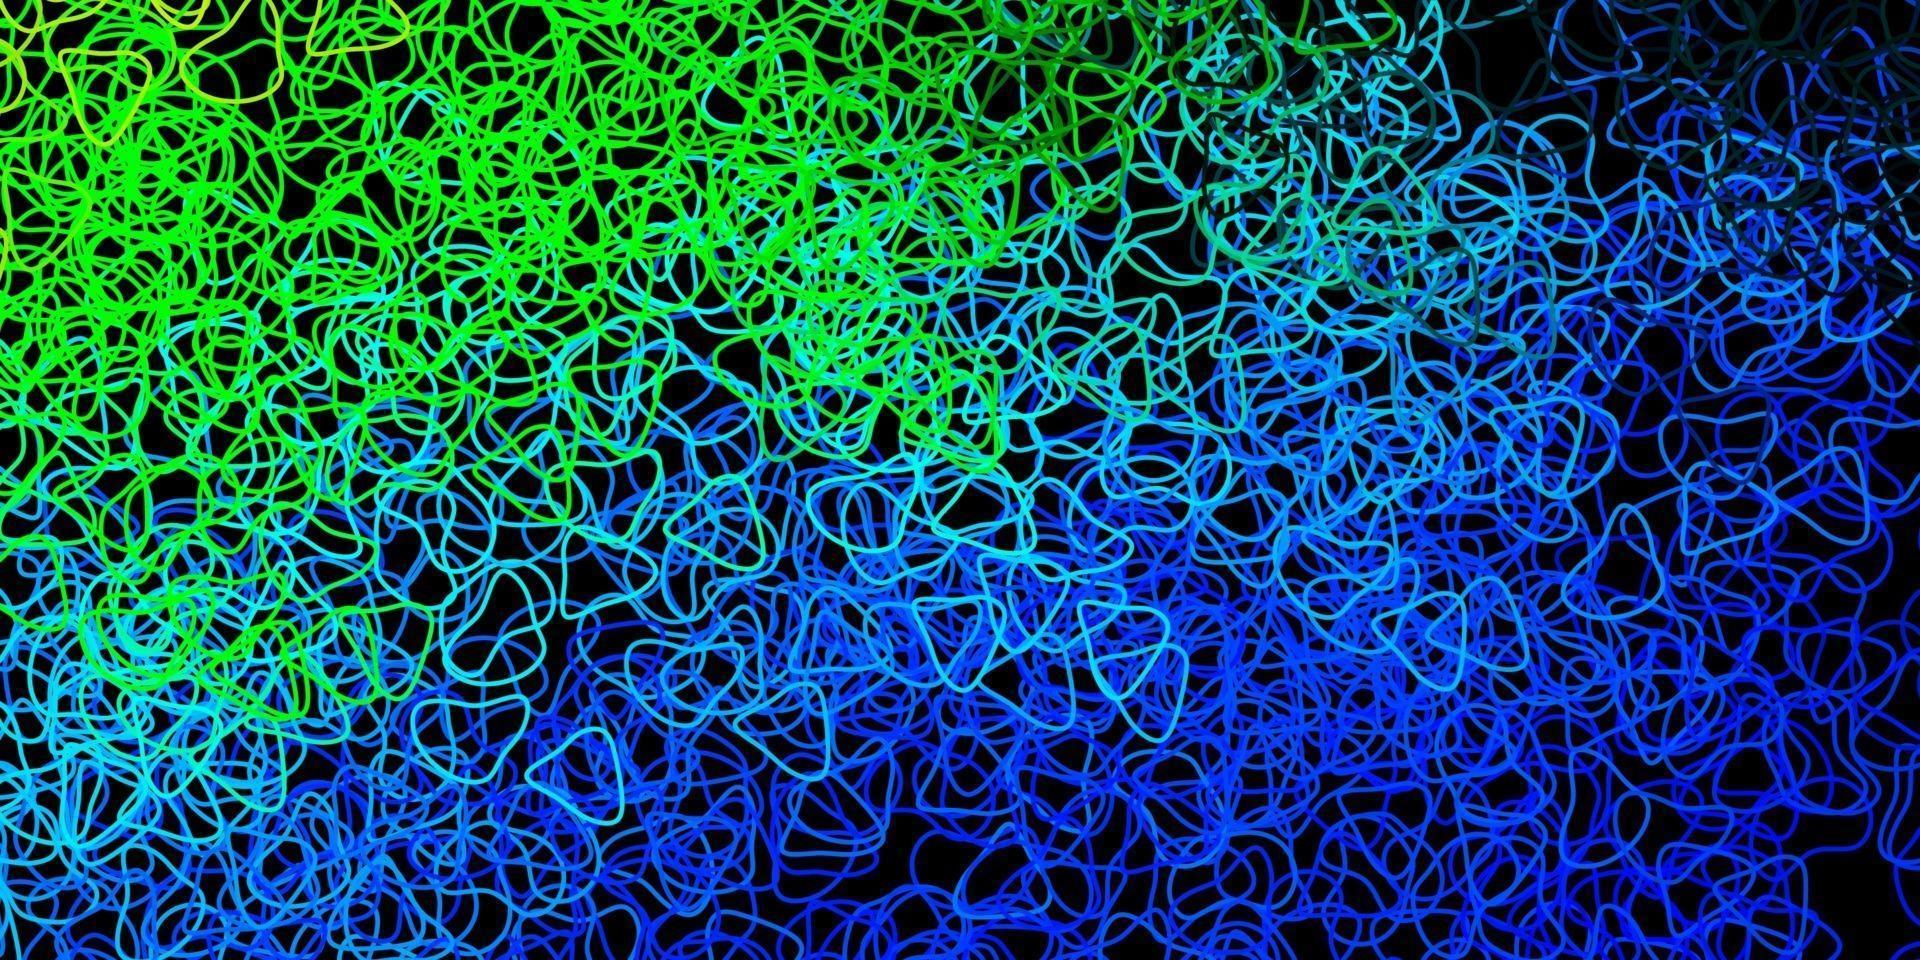 mörkblå, grön vektormall med abstrakta former. vektor